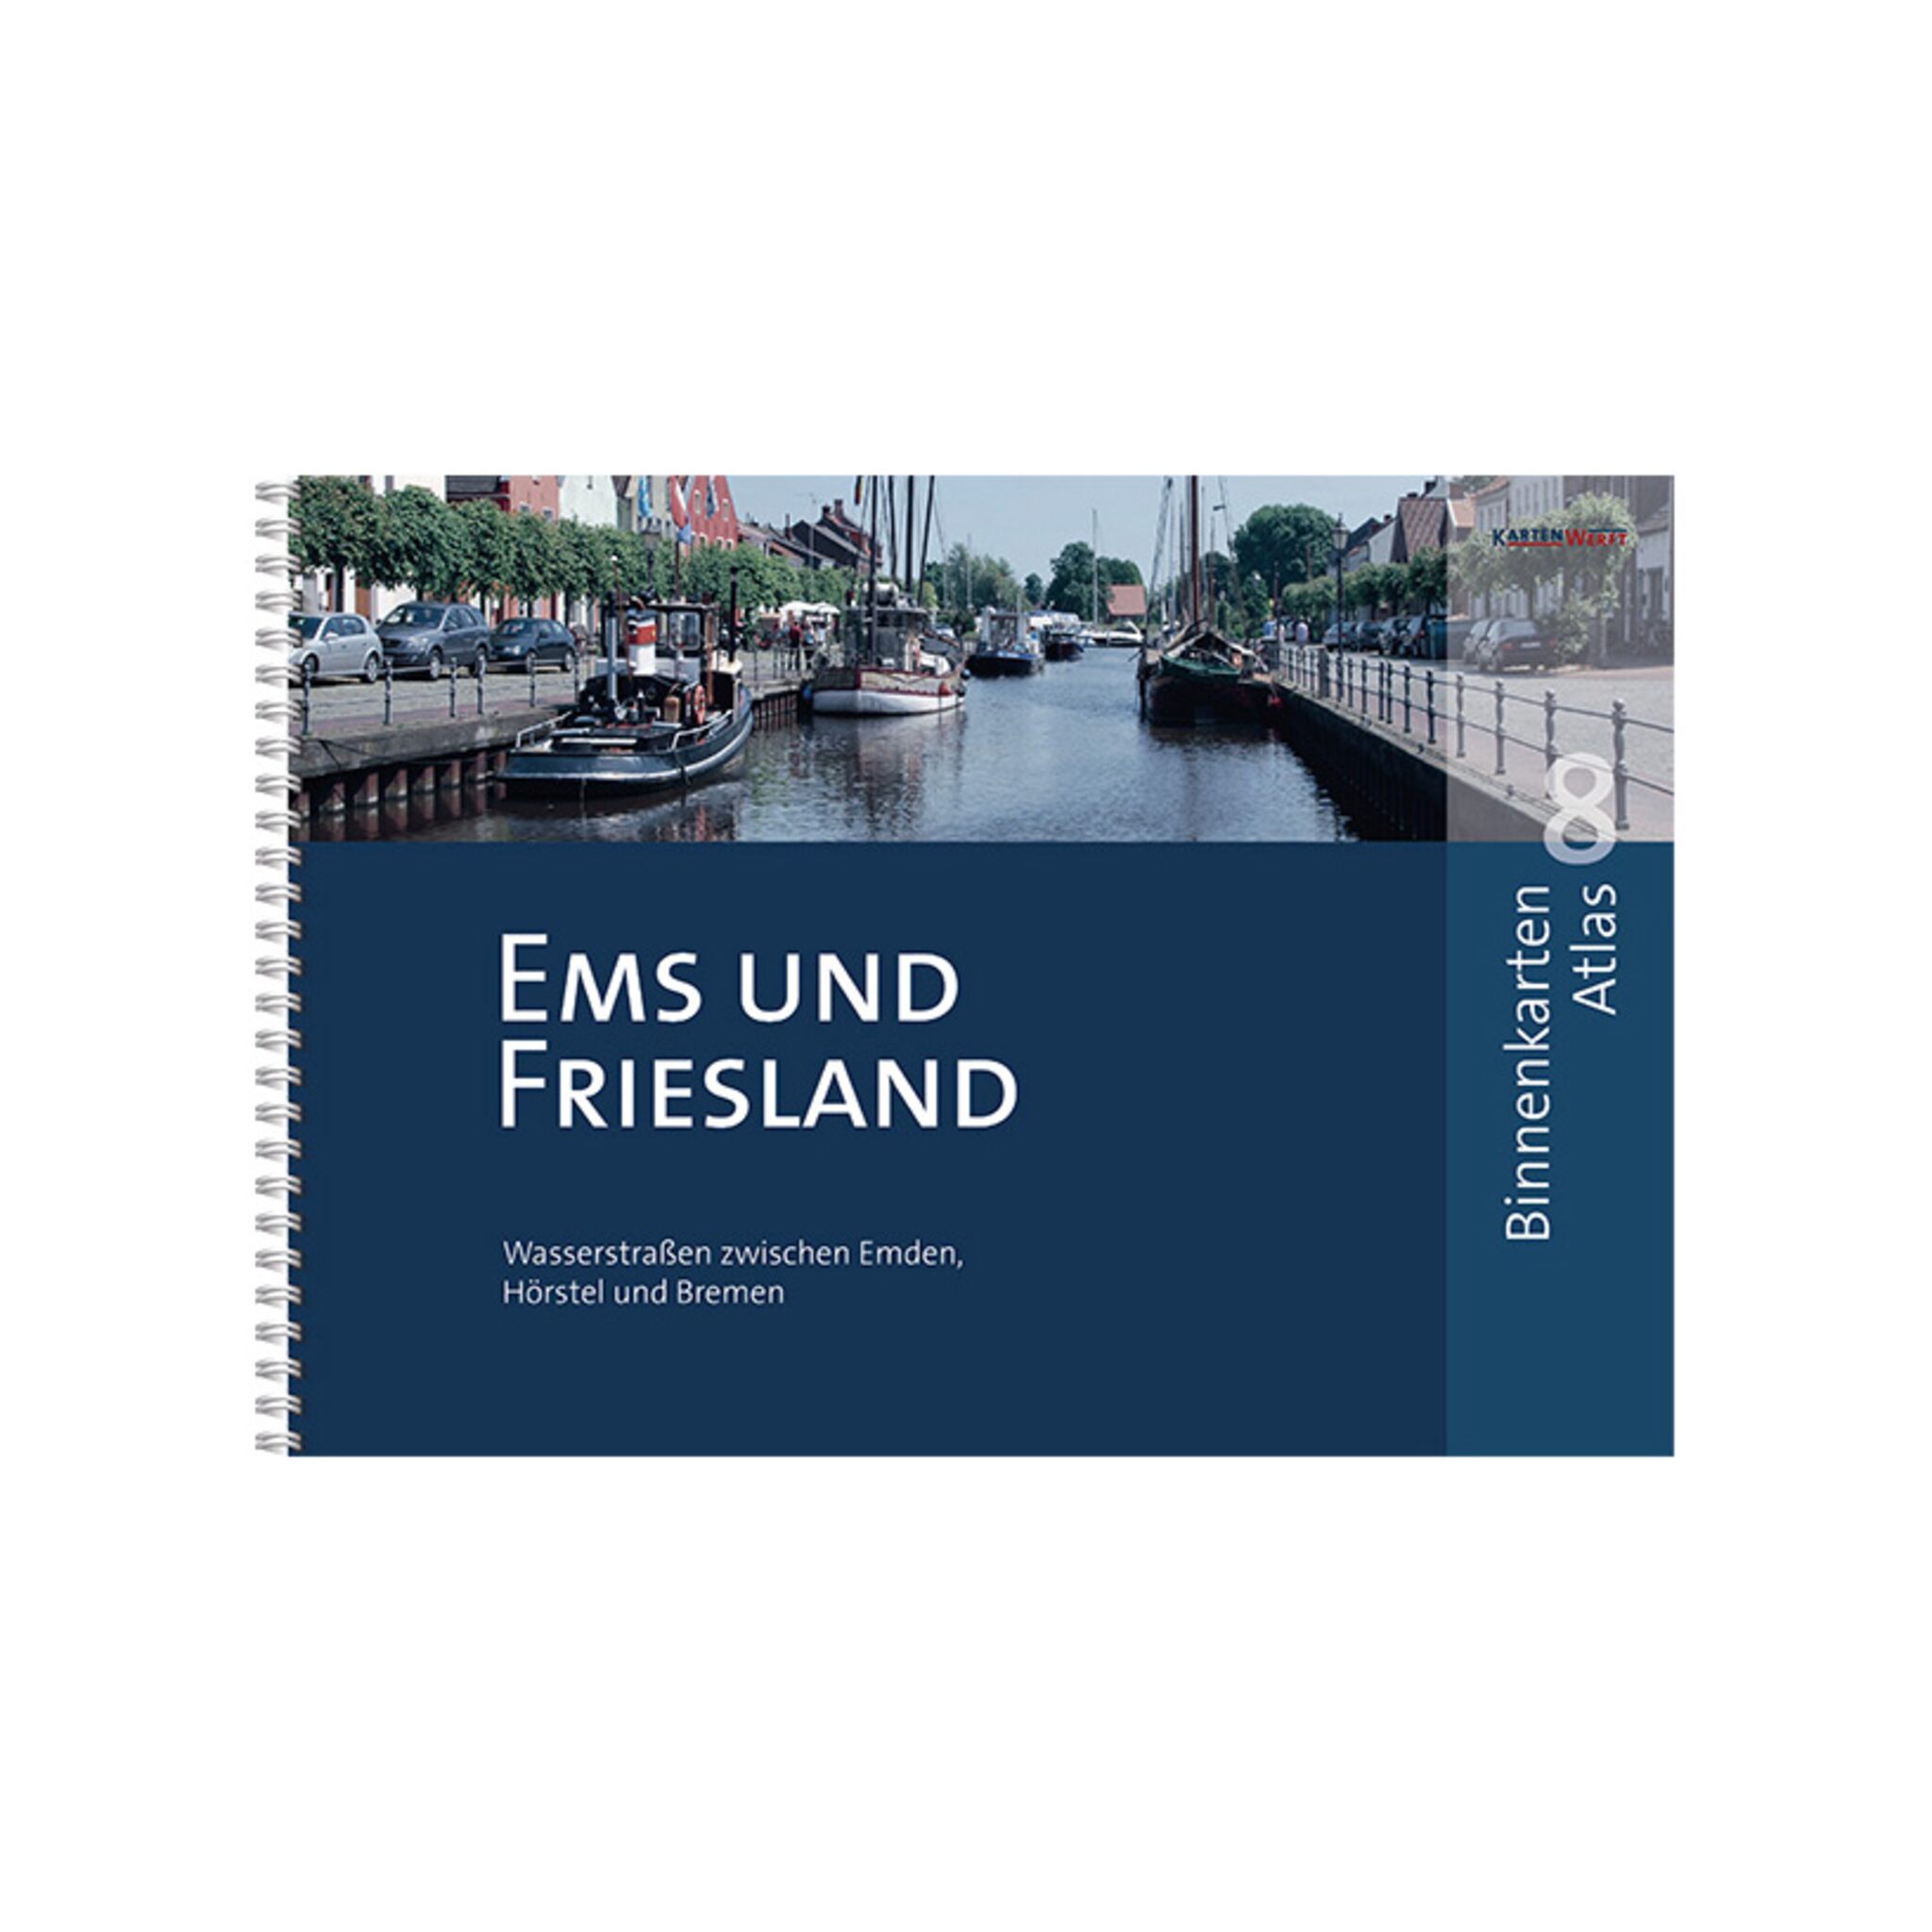 Binnenkarten Atlas 8 Ems und Friesland